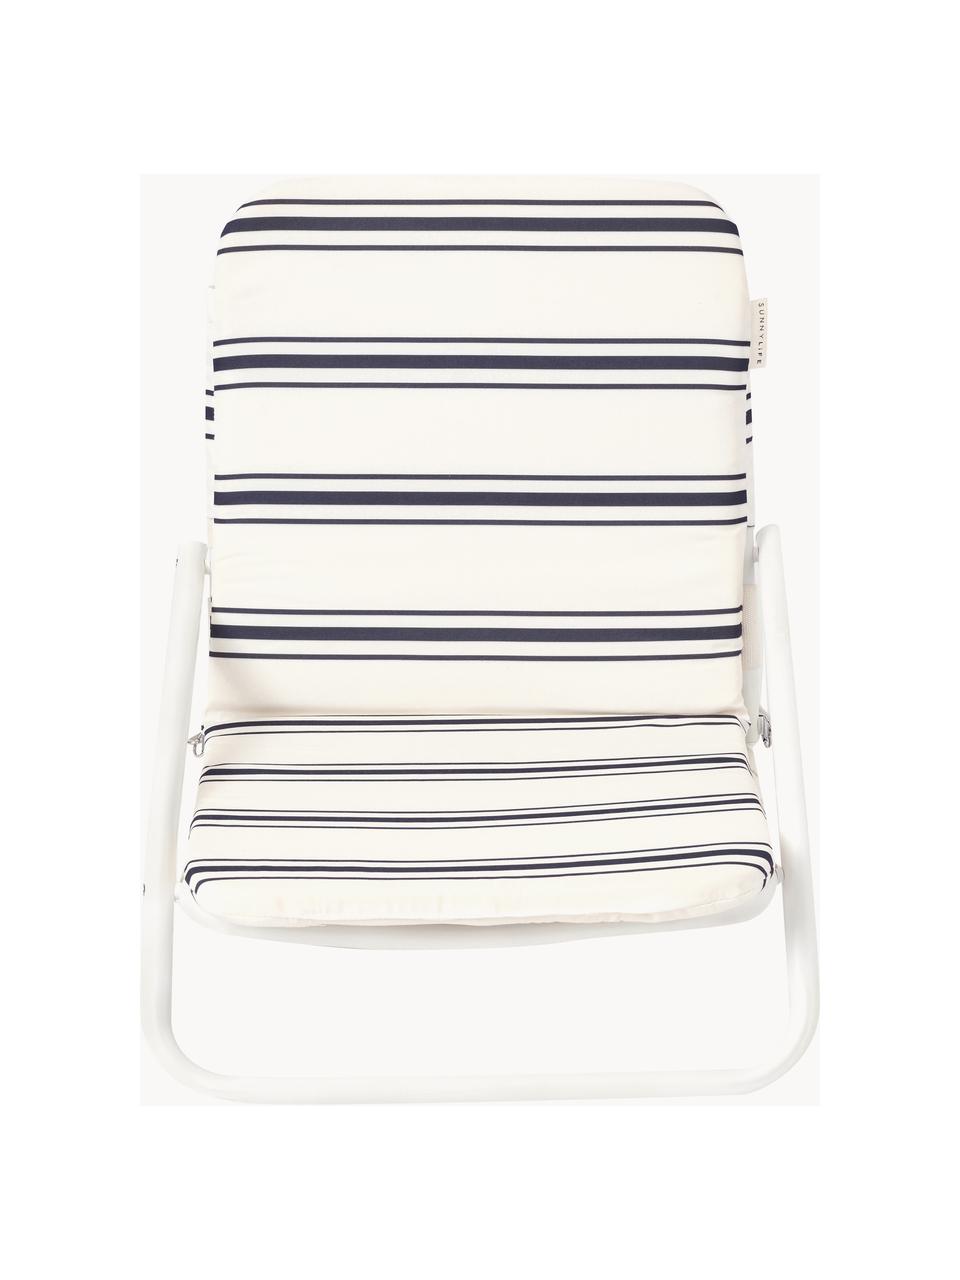 Krzesło plażowe Casa Fes, Tapicerka: 100% bawełna, Stelaż: aluminium malowane proszk, Tkanina w odcieniu złamanej bieli, czarny, S 52 x G 63 cm